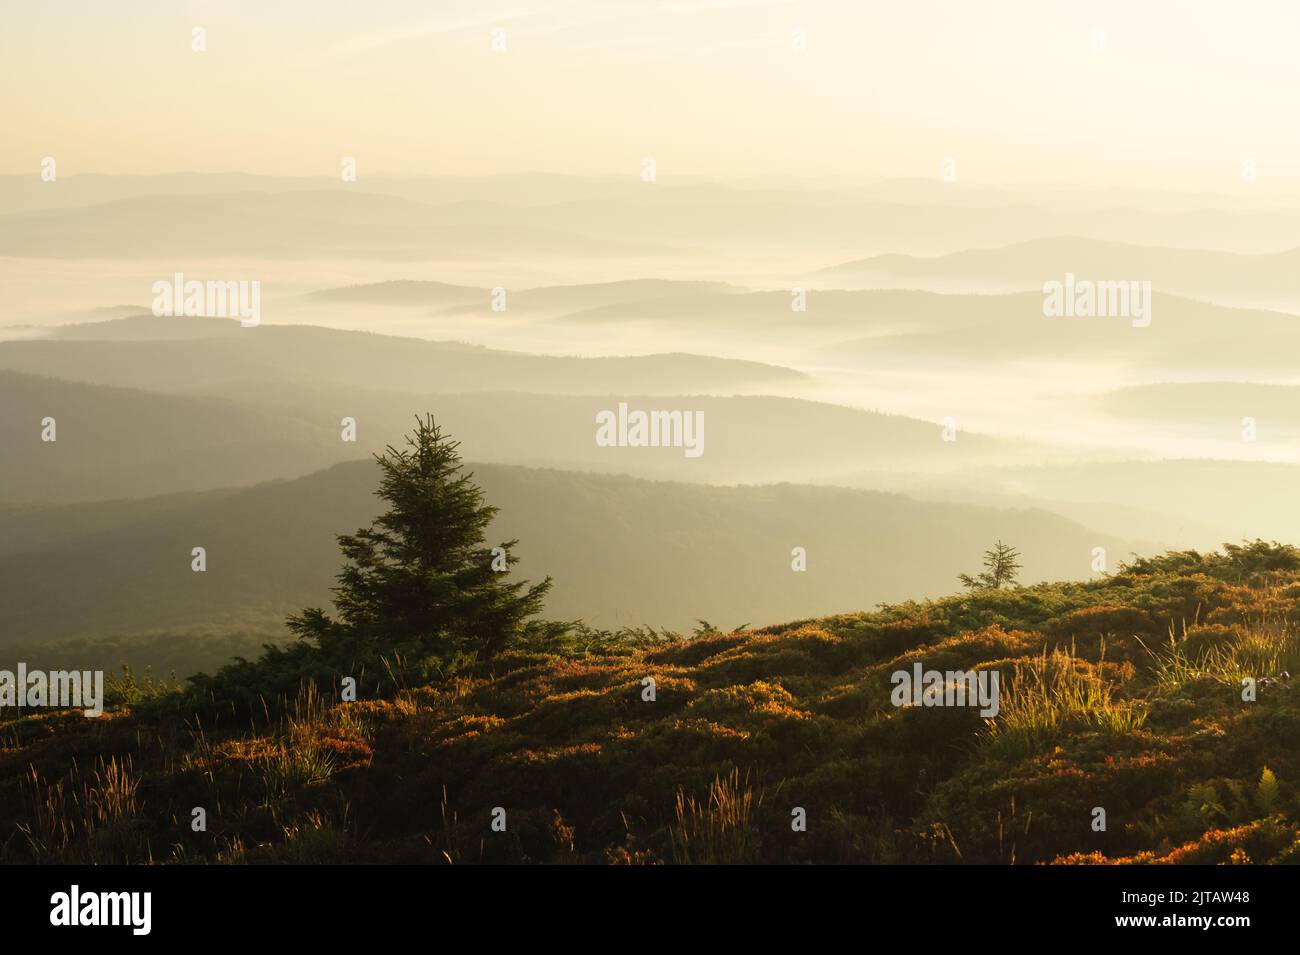 Brouillard matinal dans les montagnes d'automne. Silhouettes de sapins au premier plan. Magnifique lever de soleil en arrière-plan. Photographie de paysage Banque D'Images